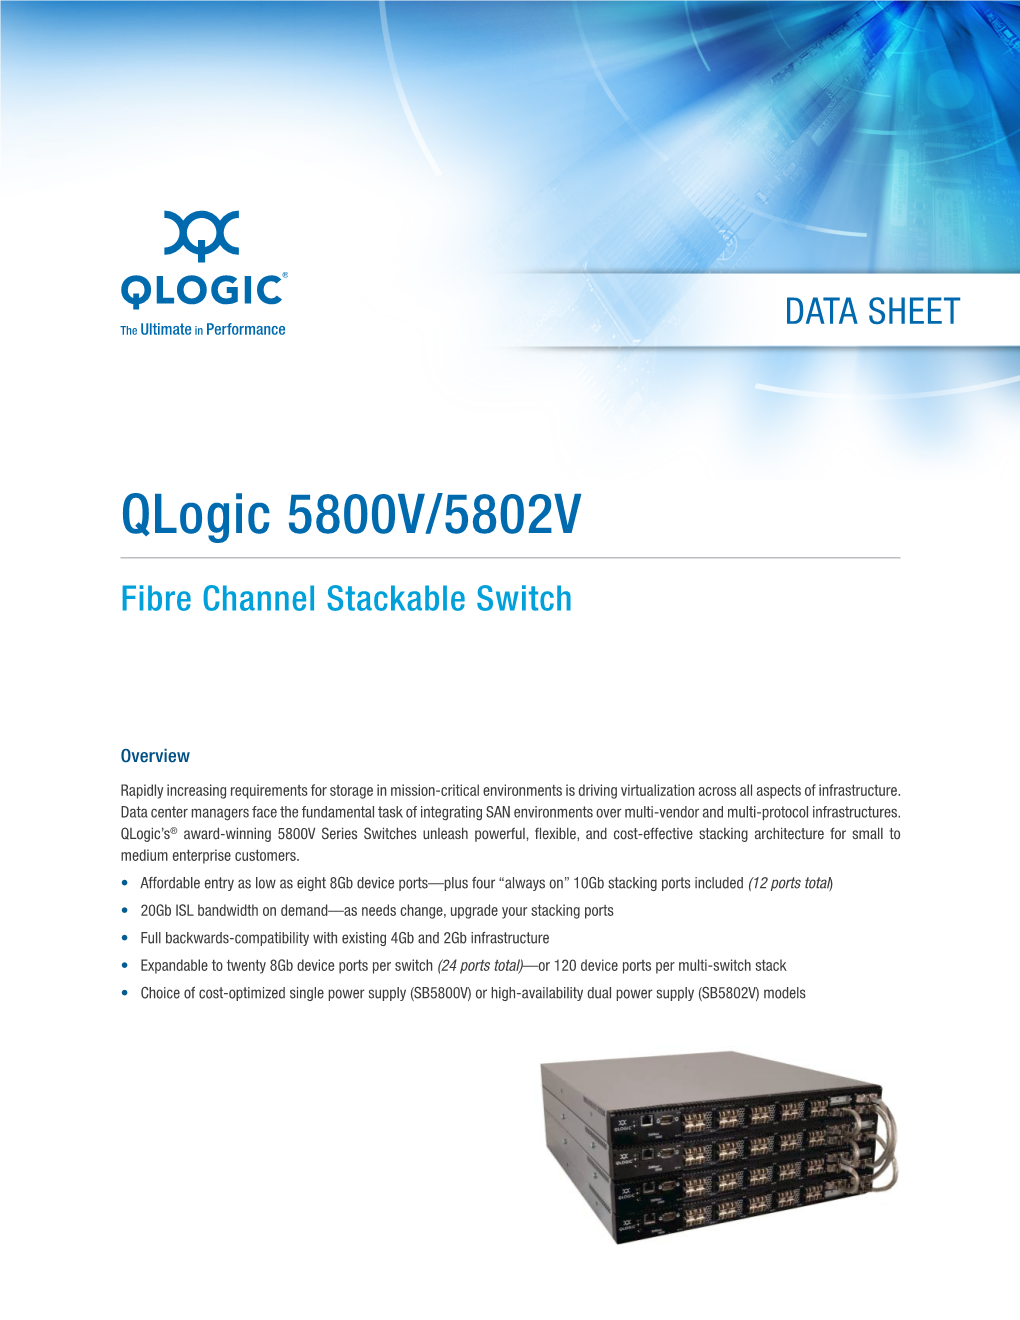 Qlogic 5800V/5802V Stackable Fibre Channel Switch Data Sheet